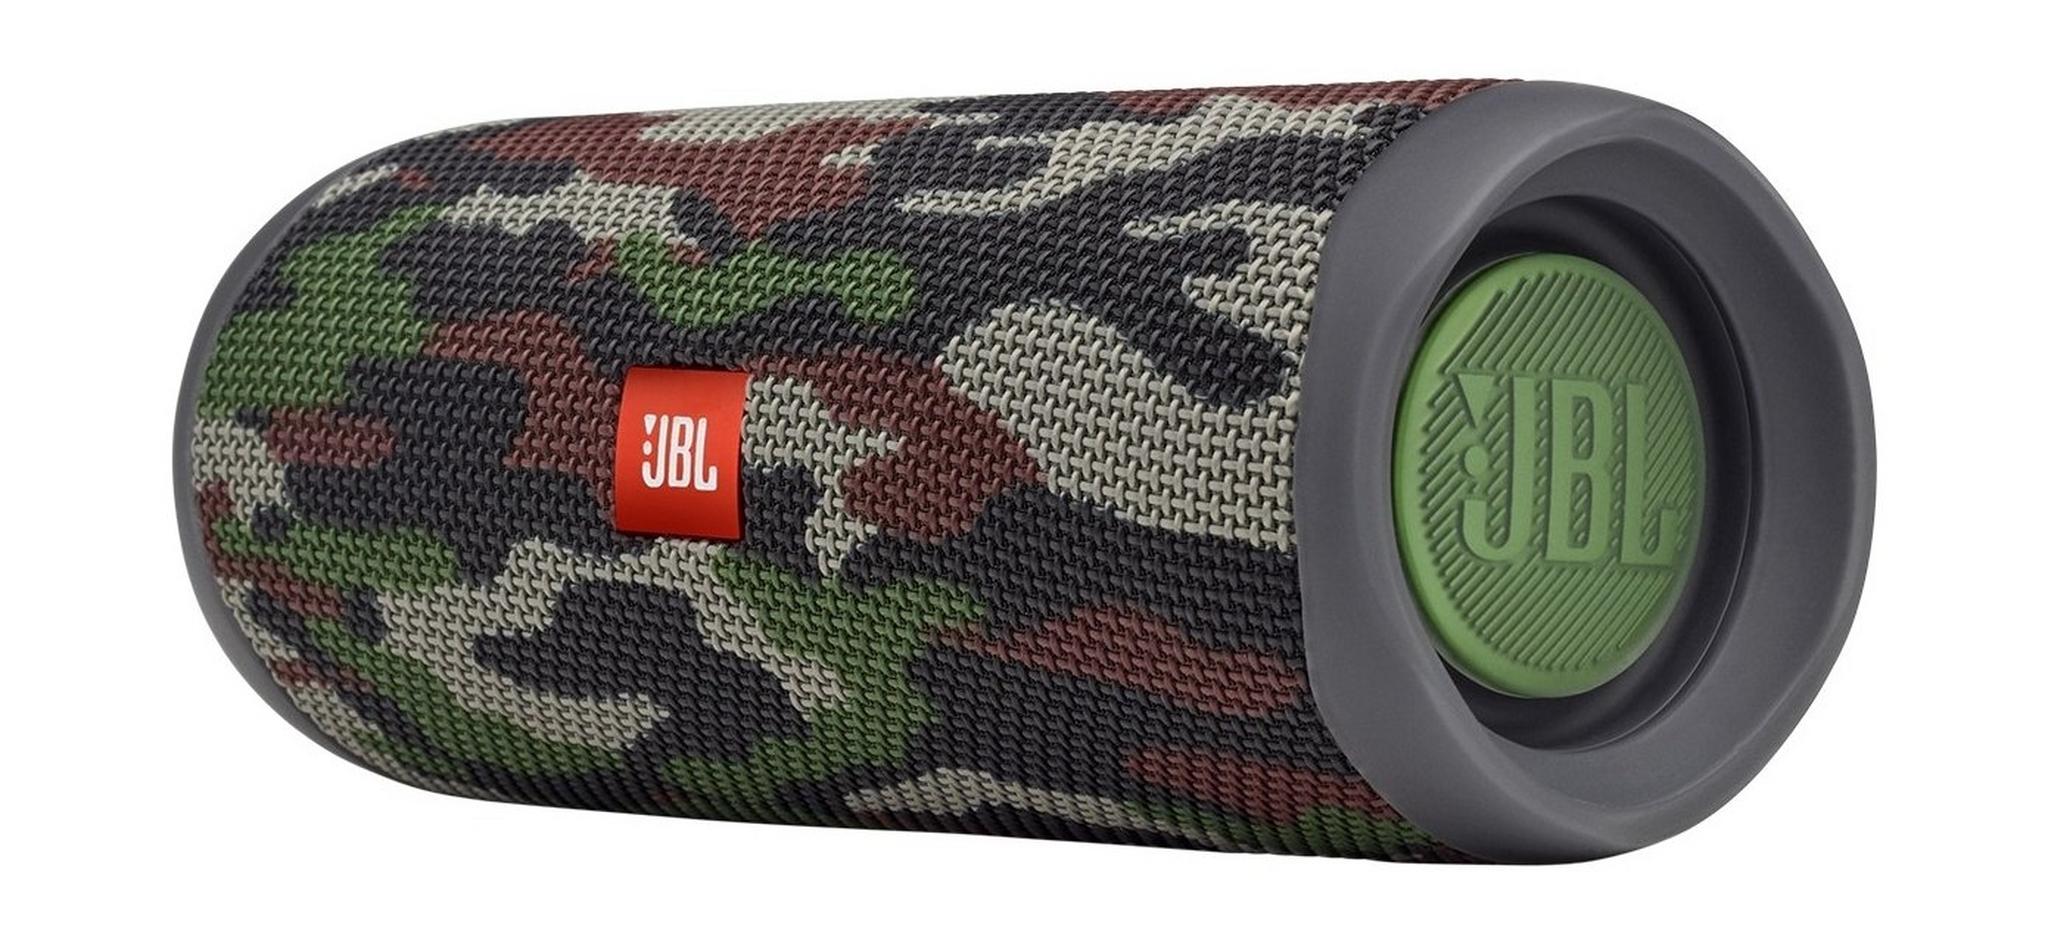 JBL Flip 5 Waterproof Bluetooth Portable Speakers - Camouflage